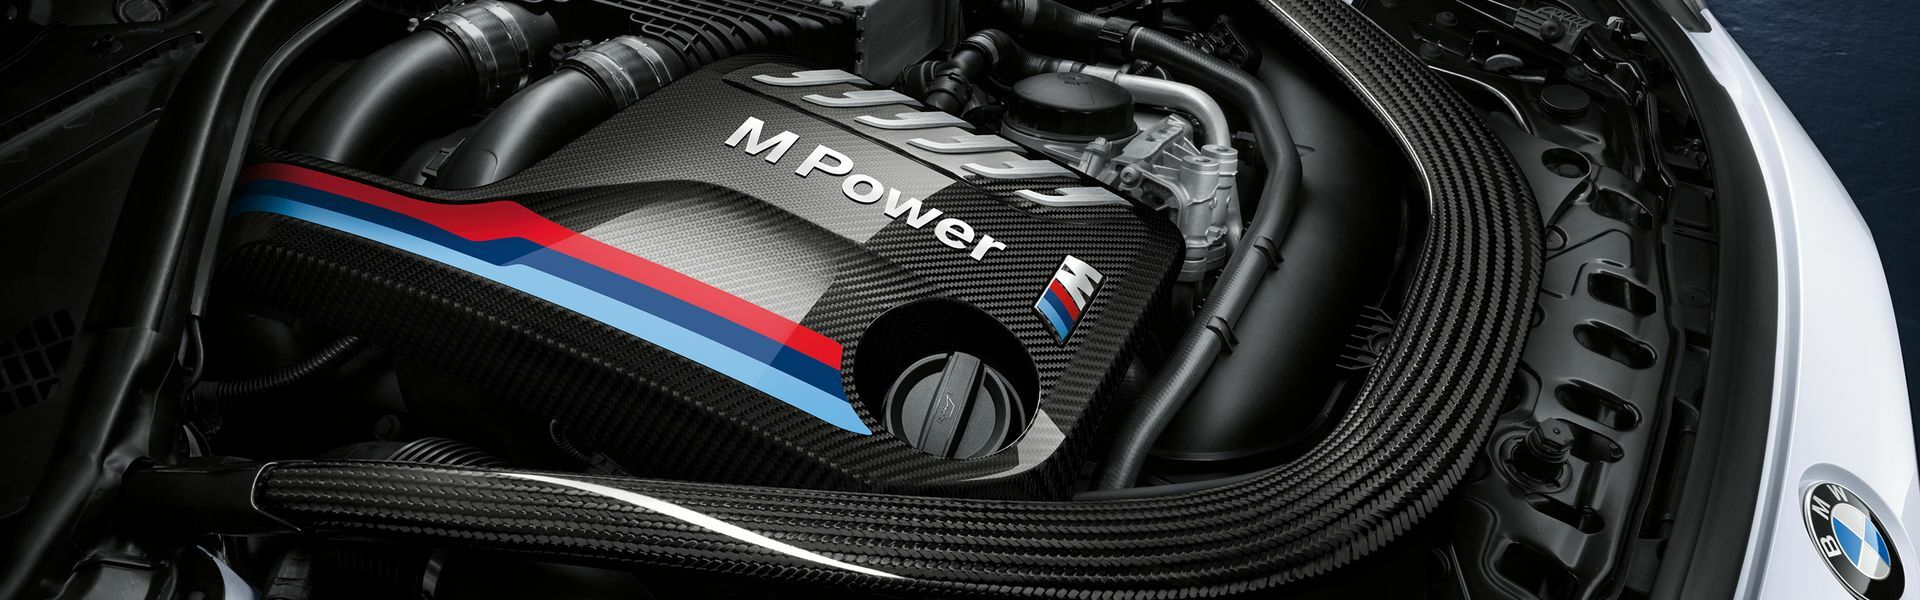 Zvýšení výkonu/ Softwarové úpravy/ Drobné performance díly pro automobil Porsche 718 Cayman GT4 / Spyder